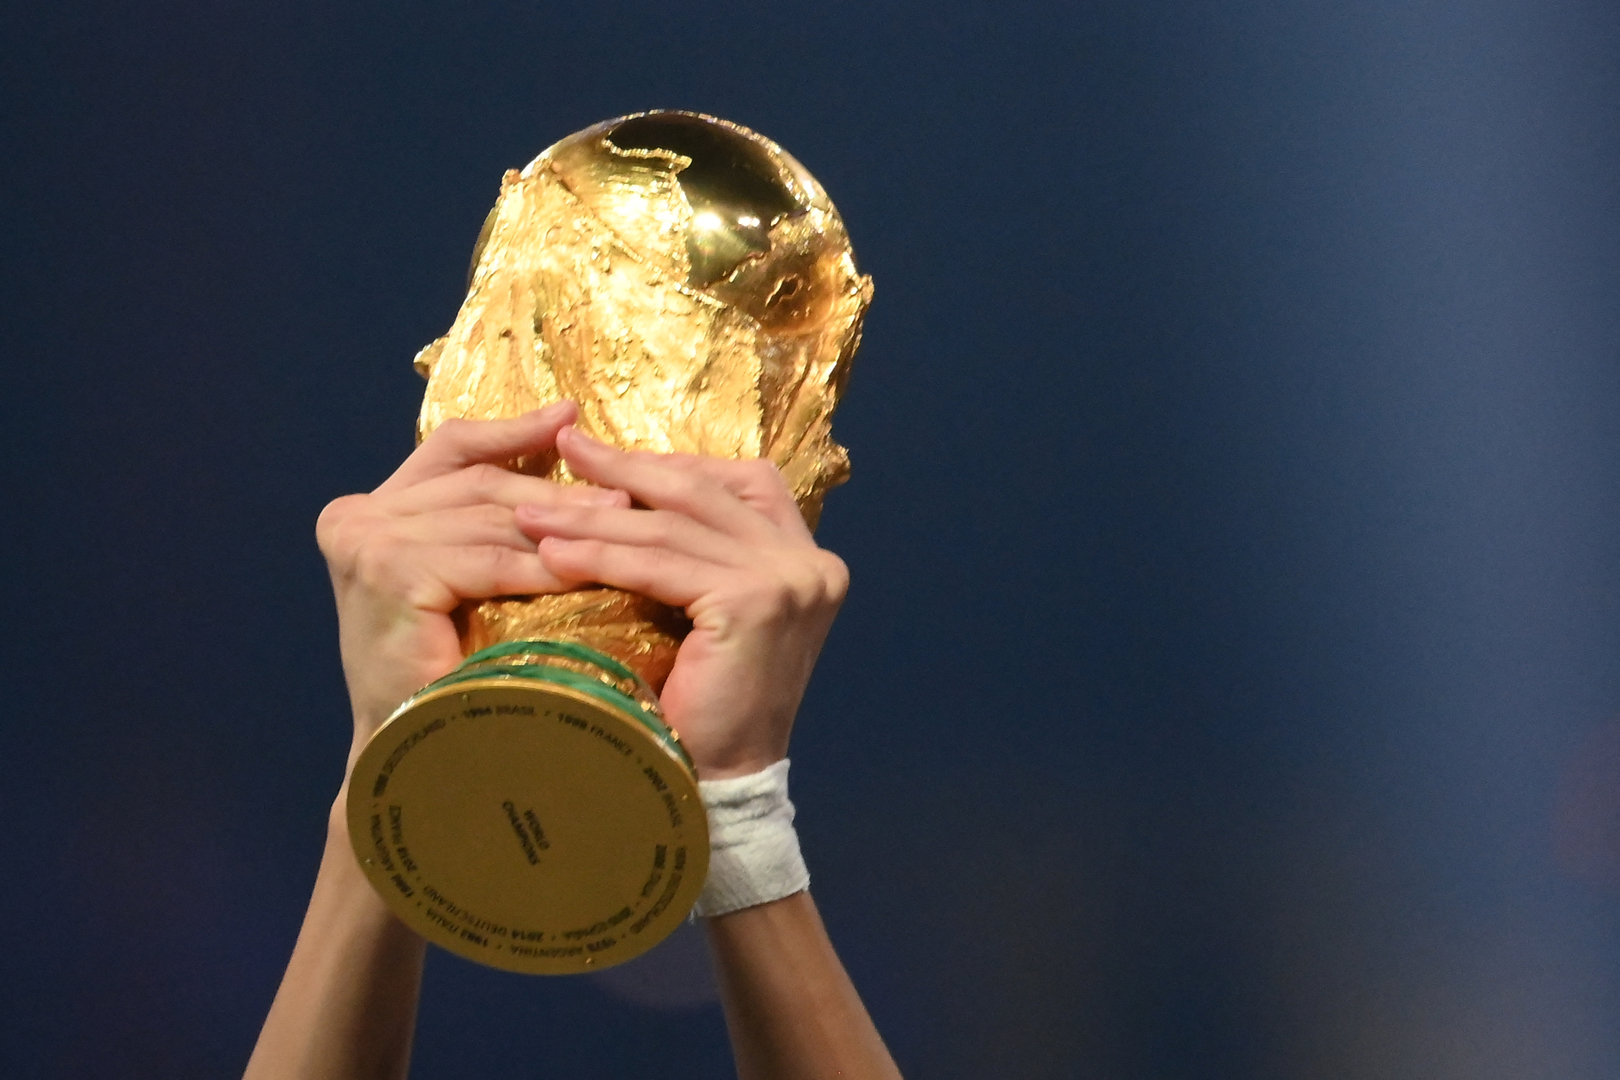 33 لاعبا في قائمة الأفضل بتاريخ بطولة كأس العالم